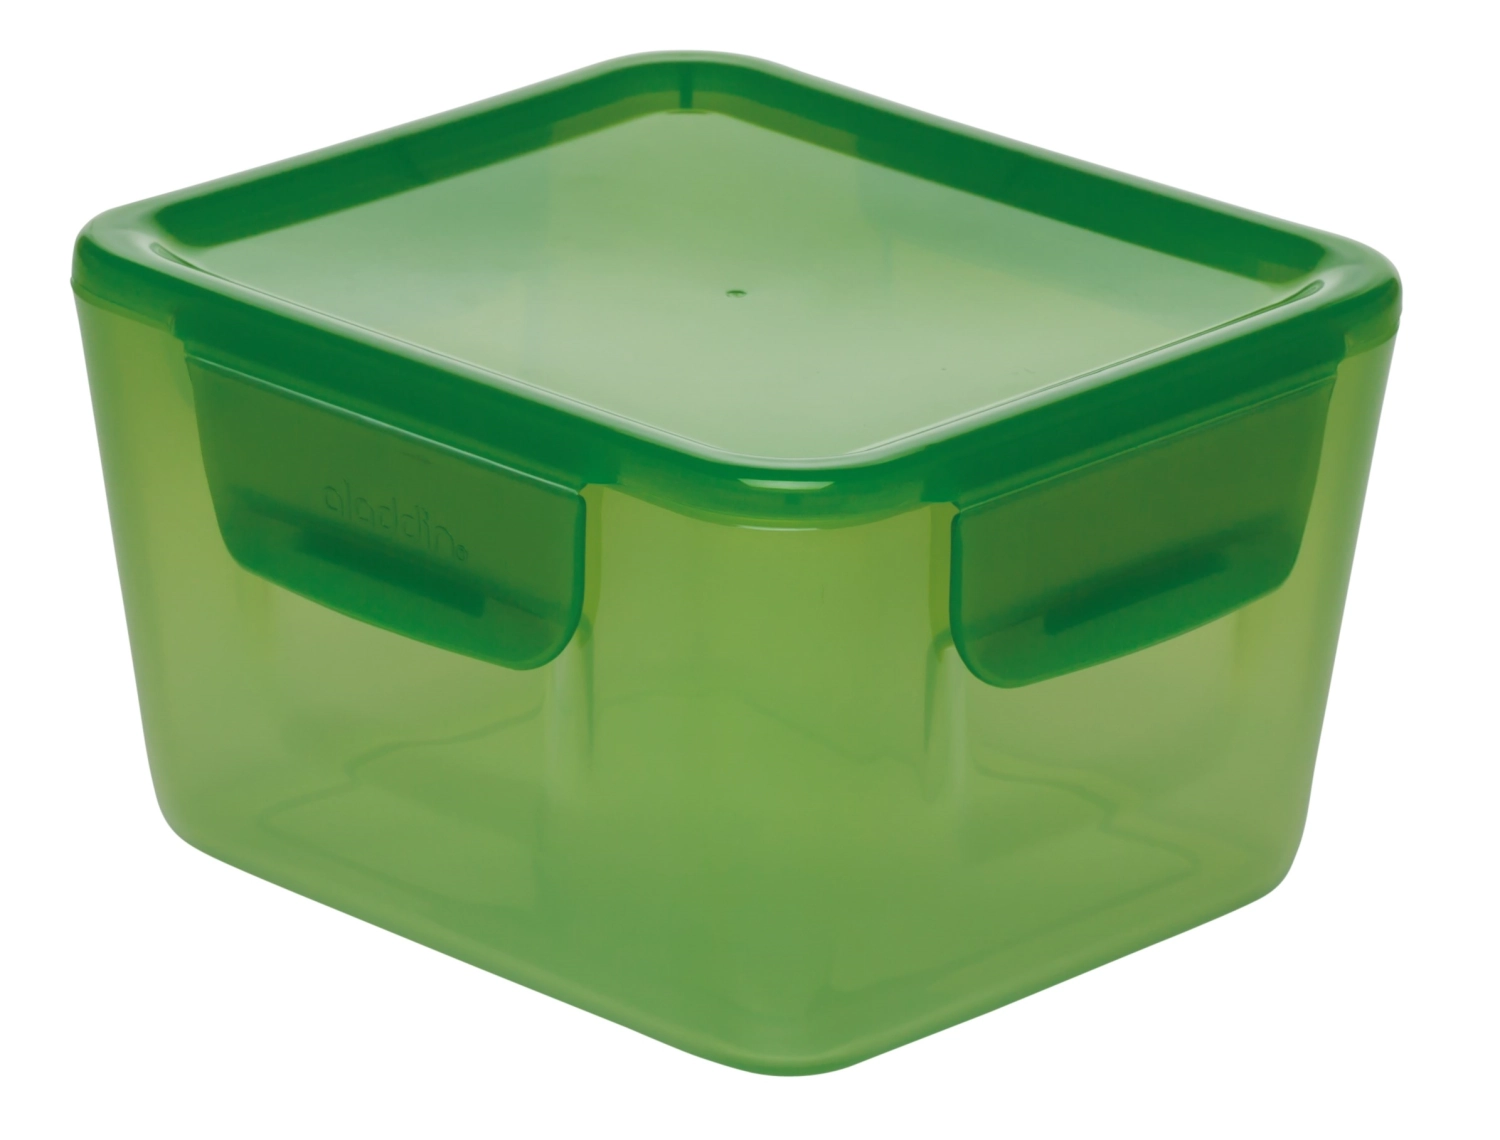 Aladdin easy-keep lunch box 1.2l green